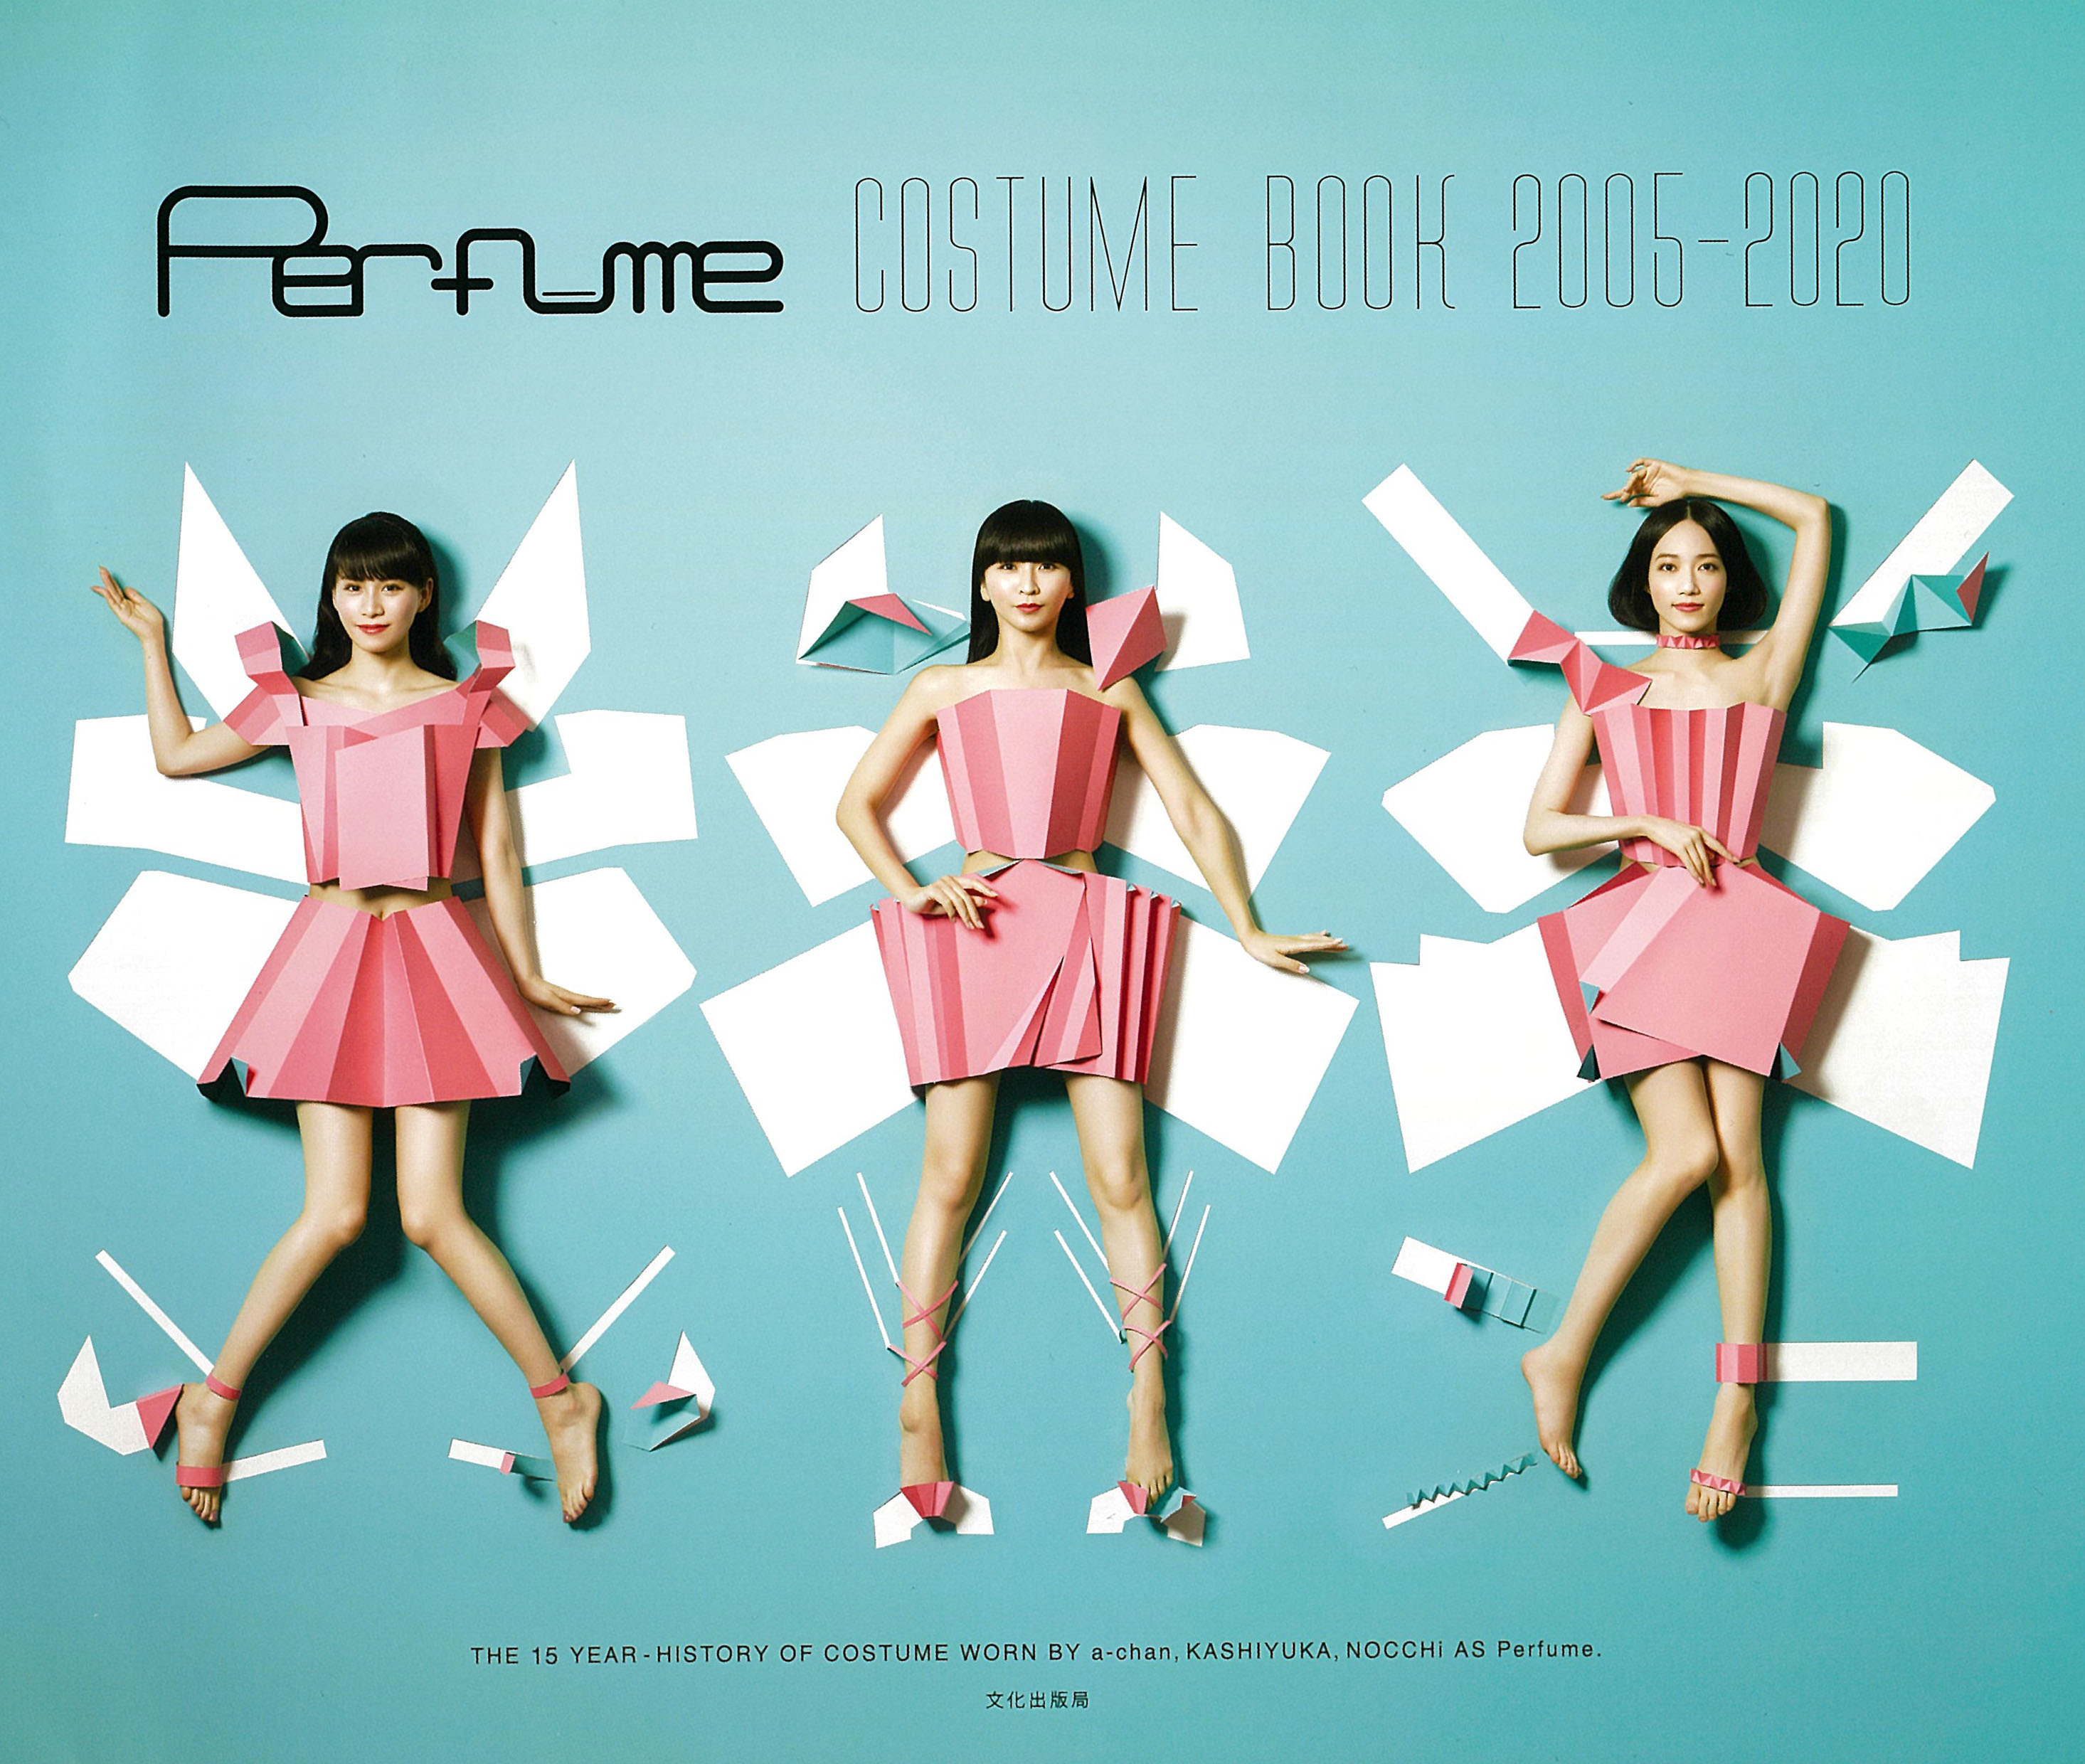 Perfume、初の衣装本が発売前に重版決定 スタンプラリーの景品